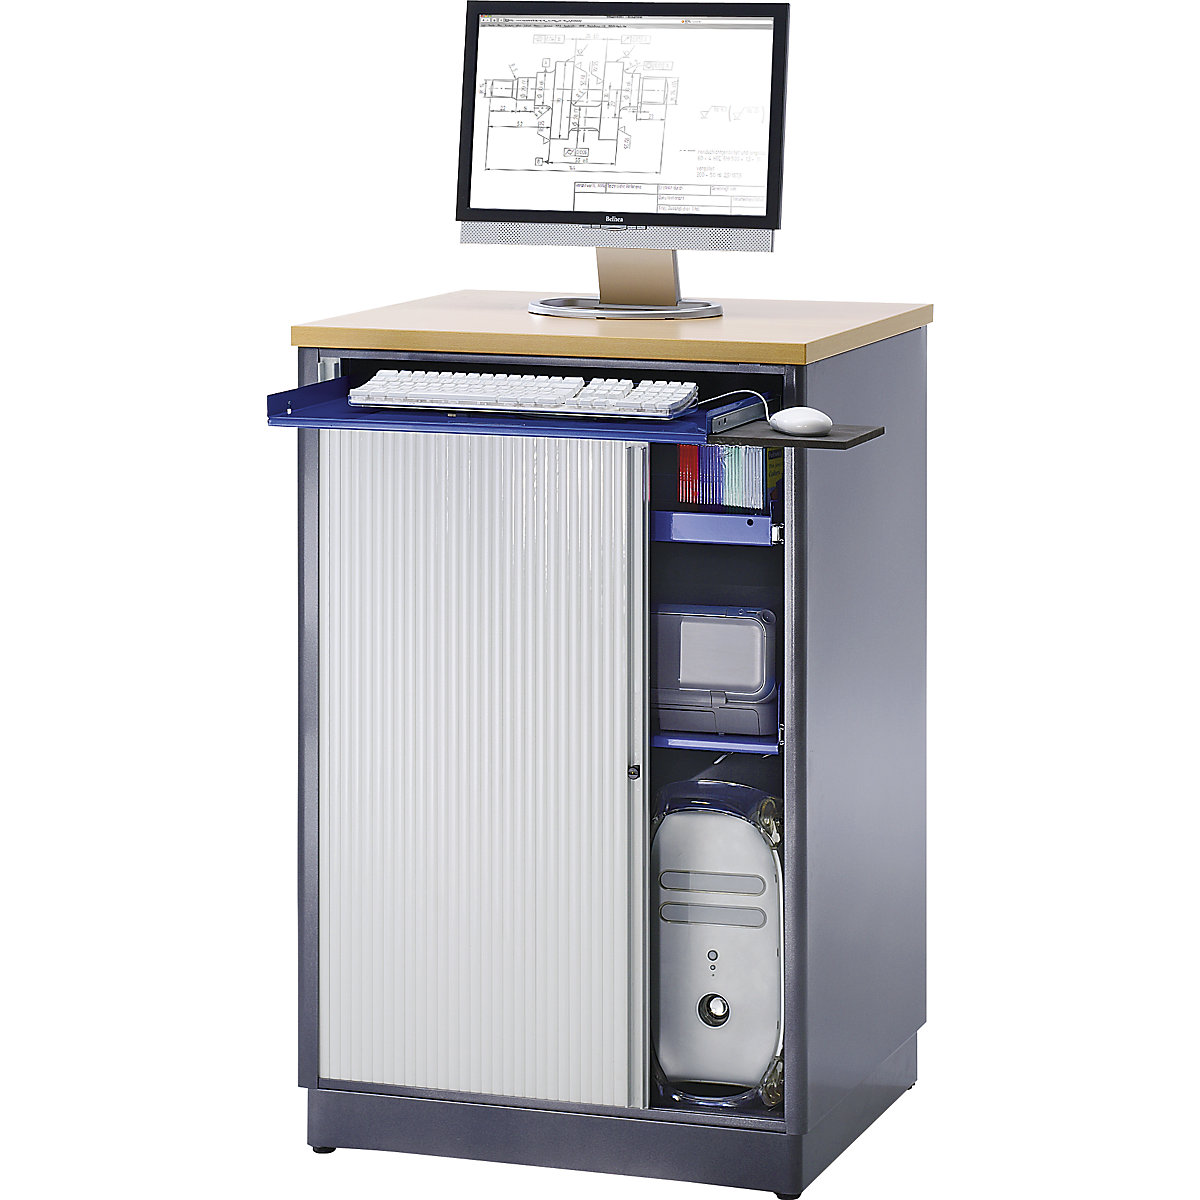 RAU – Počítačové pracovisko, v x š x h 1100 x 720 x 660 mm, antracitová metalická / enciánová modrá